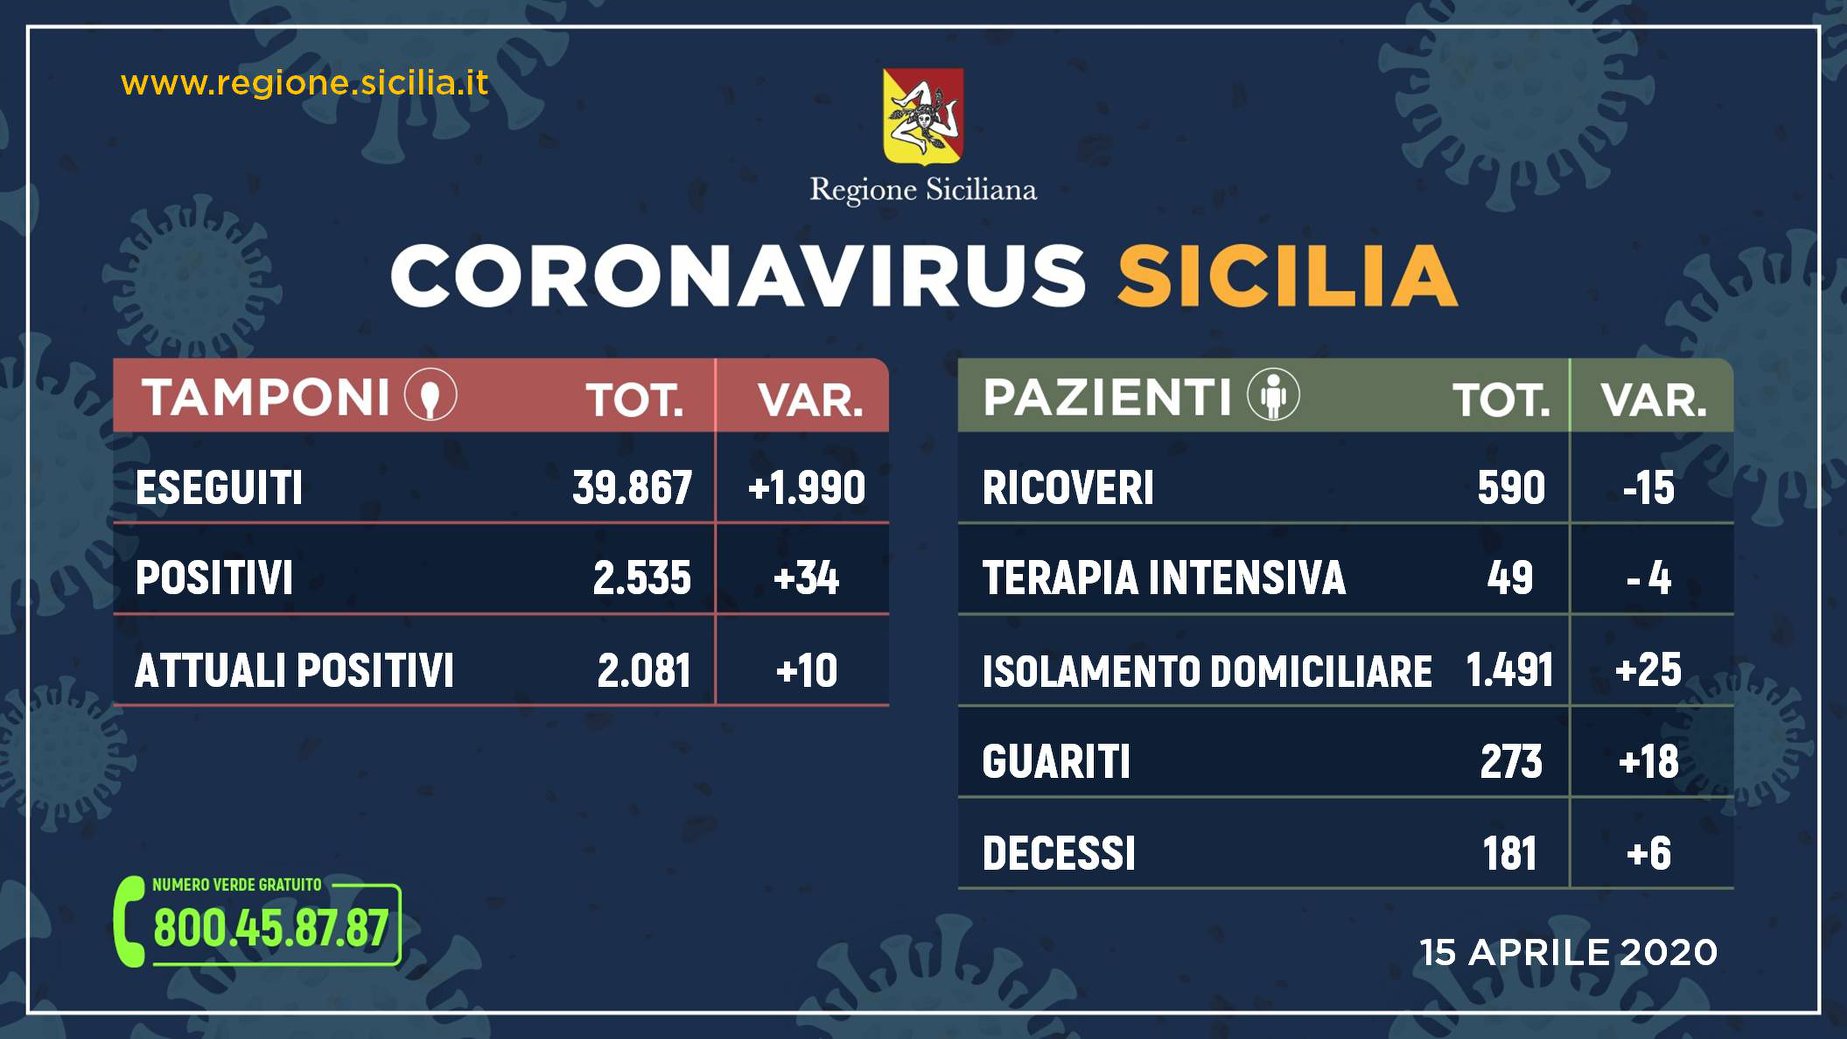 Coronavirus – Quadro riepilogativo della situazione in Sicilia